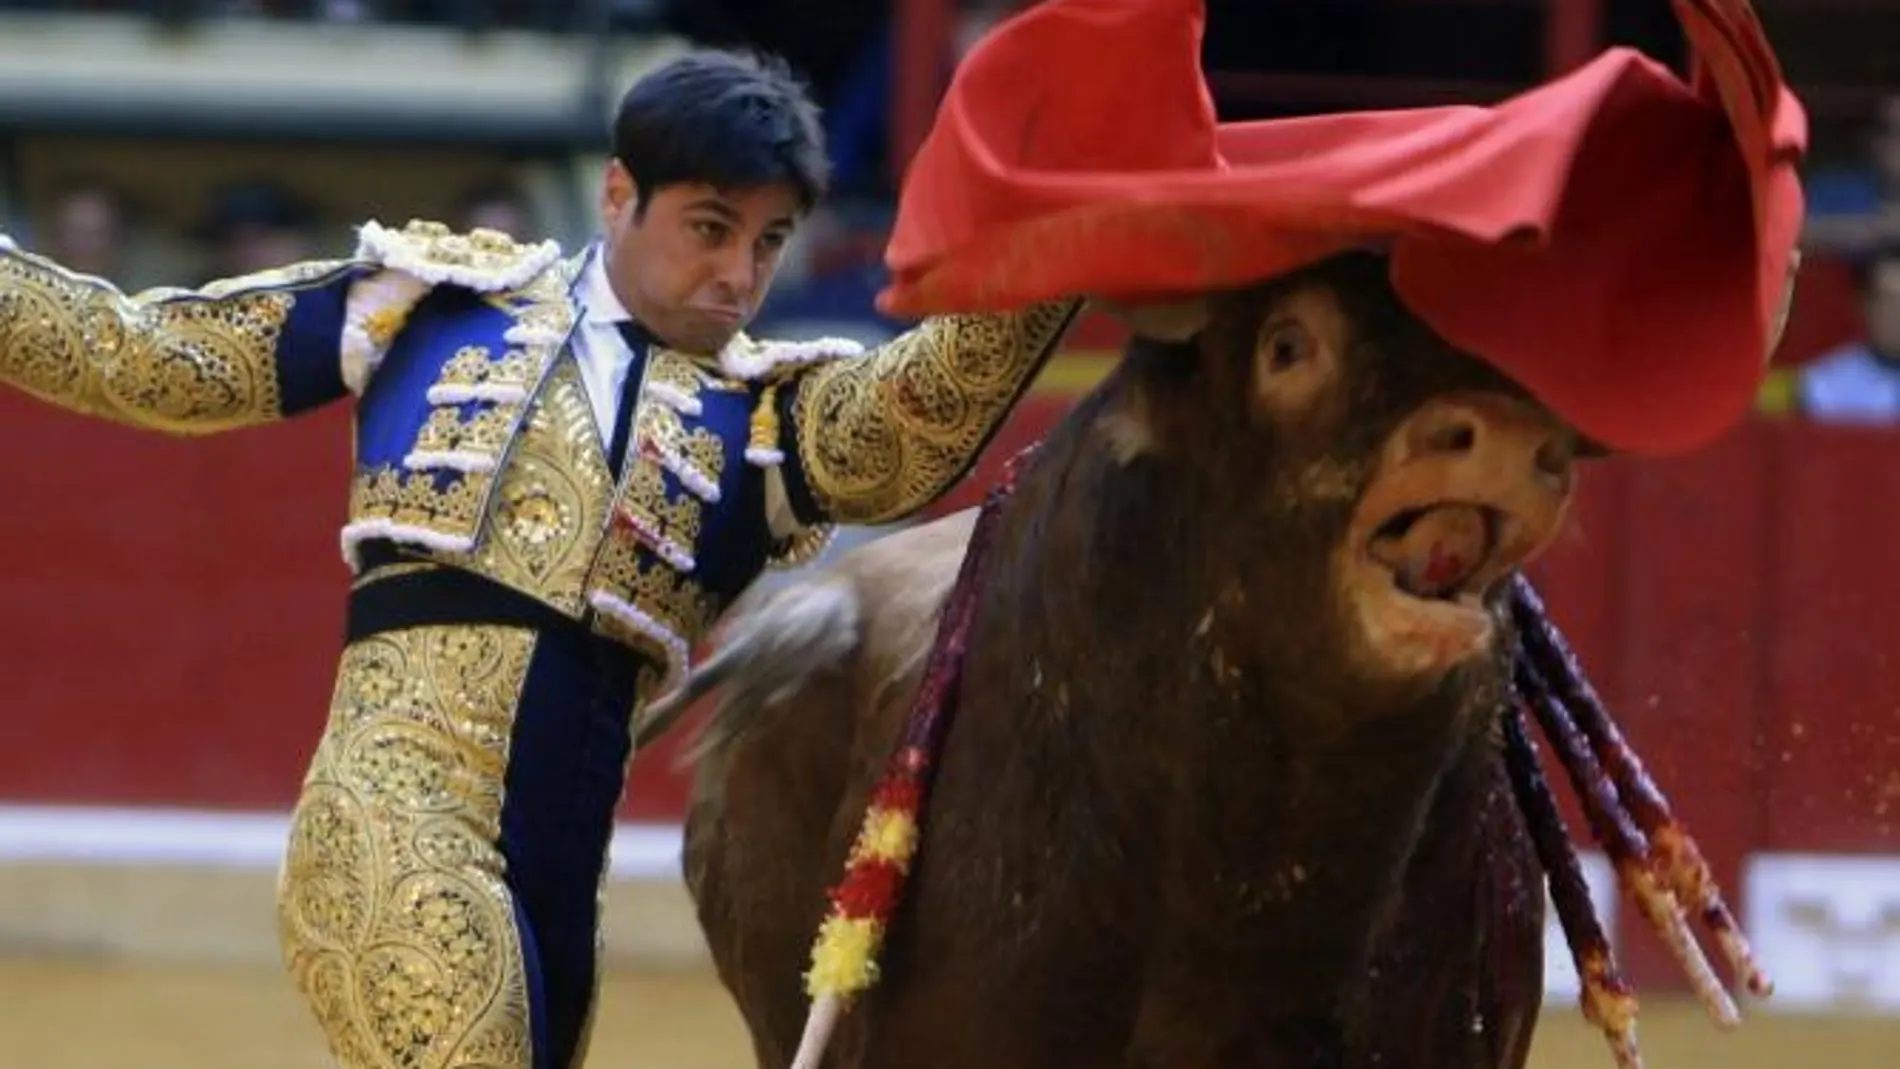 El diestro Francisco Rivera Ordóñez, "Paquirri", lidia a su primer astado en la corrida de Feria del Pilar de Zaragoza